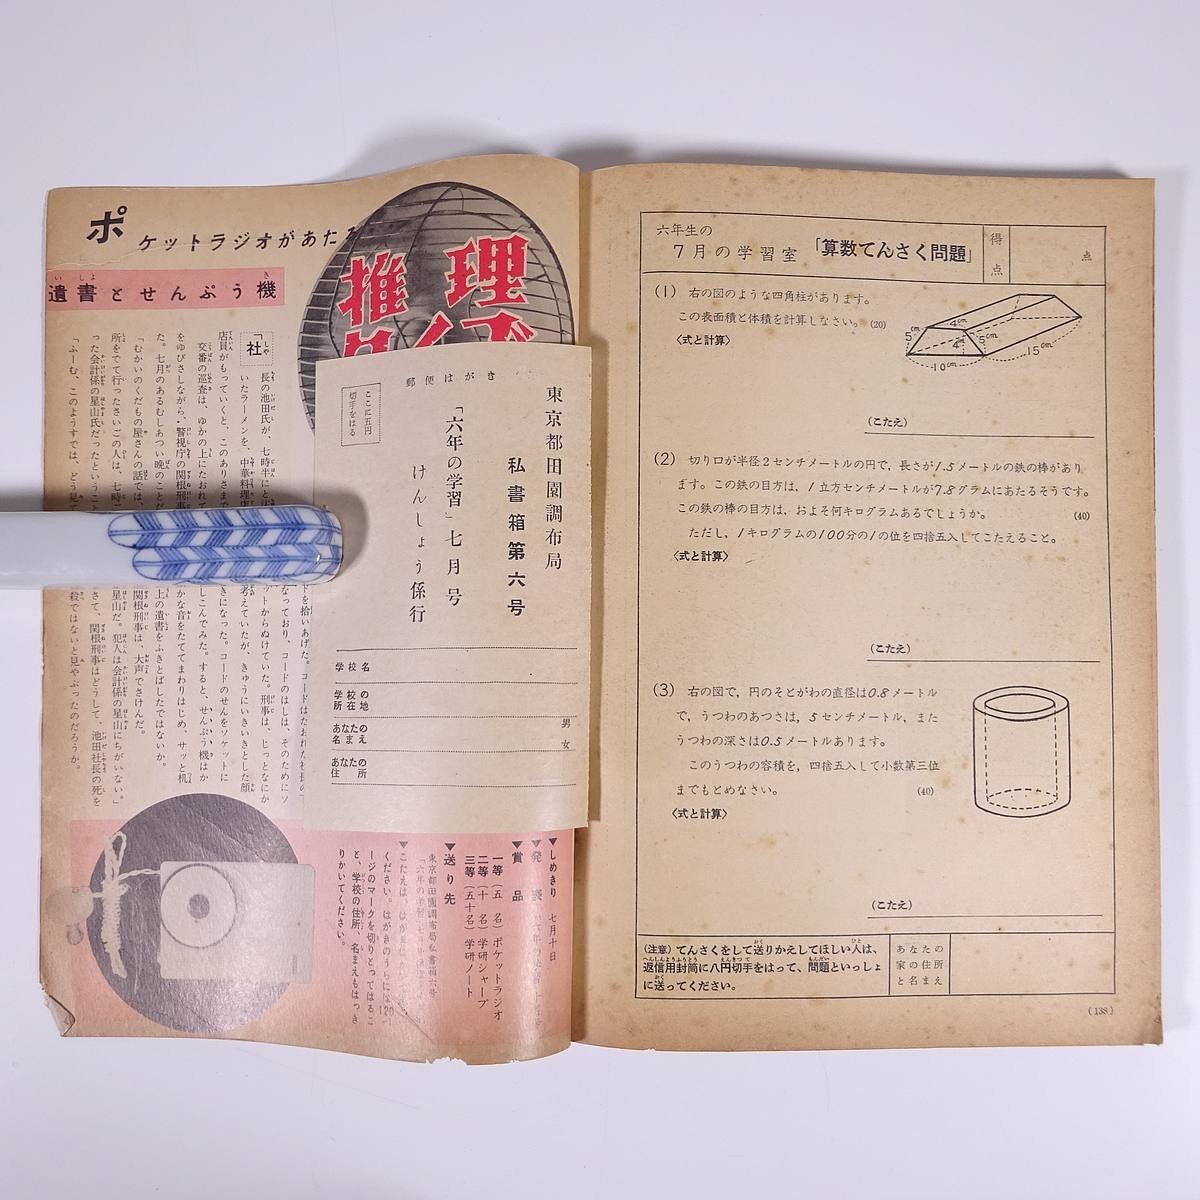  six year. study 1960/7 Gakken Gakken study research company Showa era magazine child book@ child book study . a little over education 